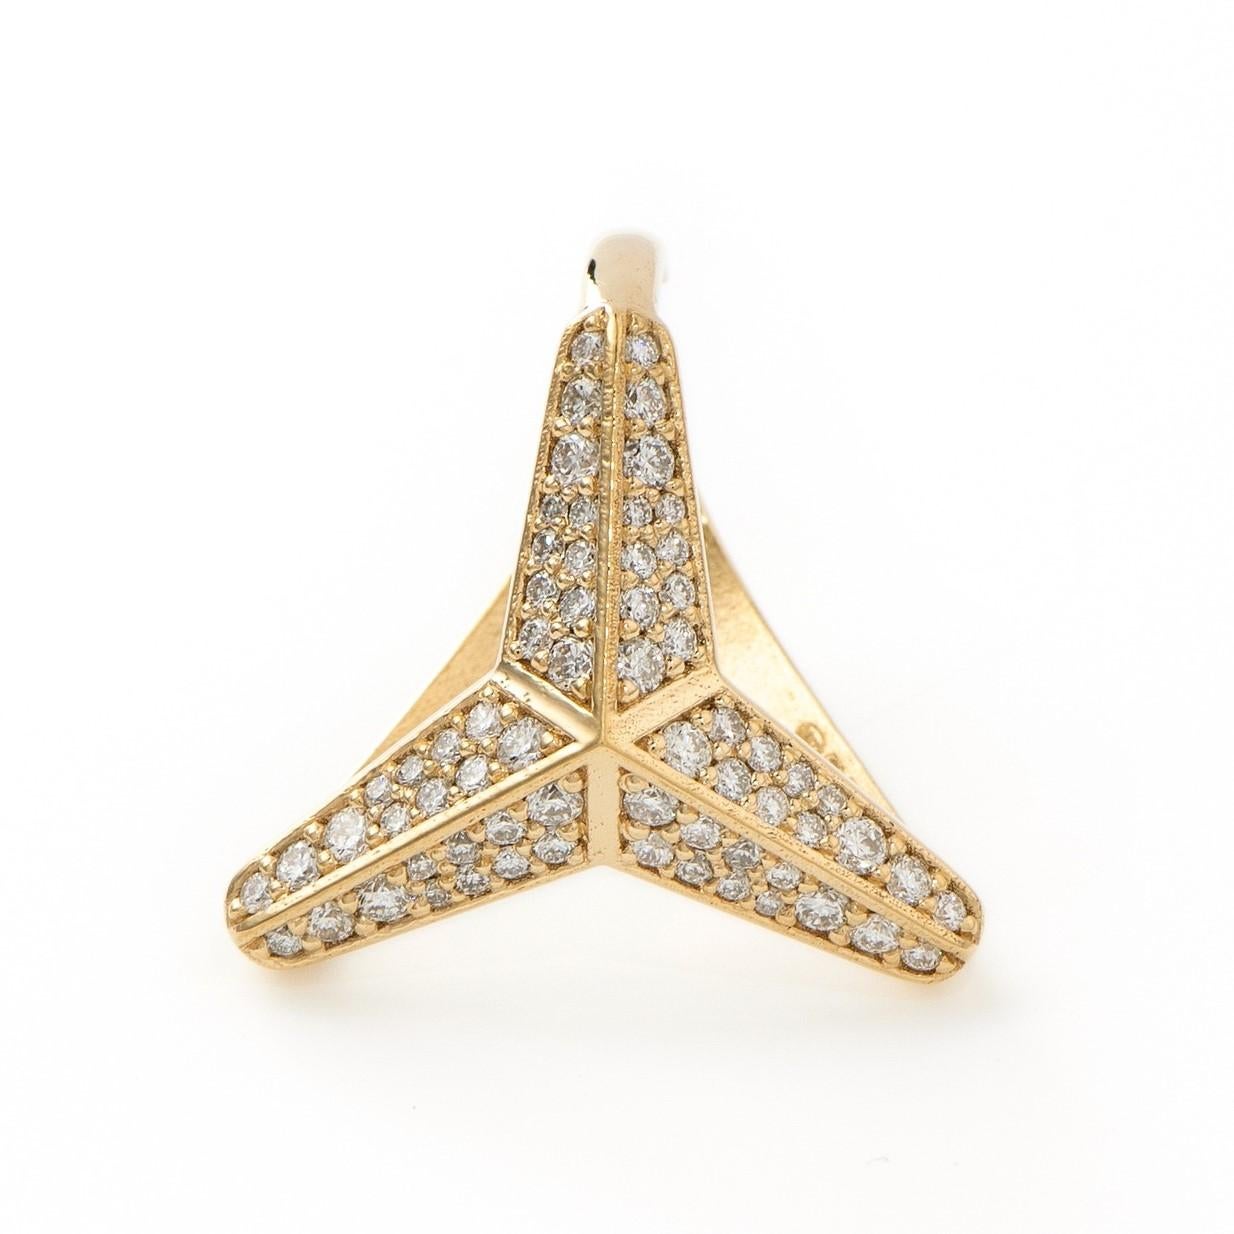 Die Ohrmanschette mit dem dreizackigen Stern und den großen Diamanten ist aus 18 Karat Gelbgold gefertigt und in Zypern gestempelt. Diese atemberaubende Diamant-Ohrmanschette ist hochglanzpoliert und mit natürlichen weißen Diamanten von insgesamt